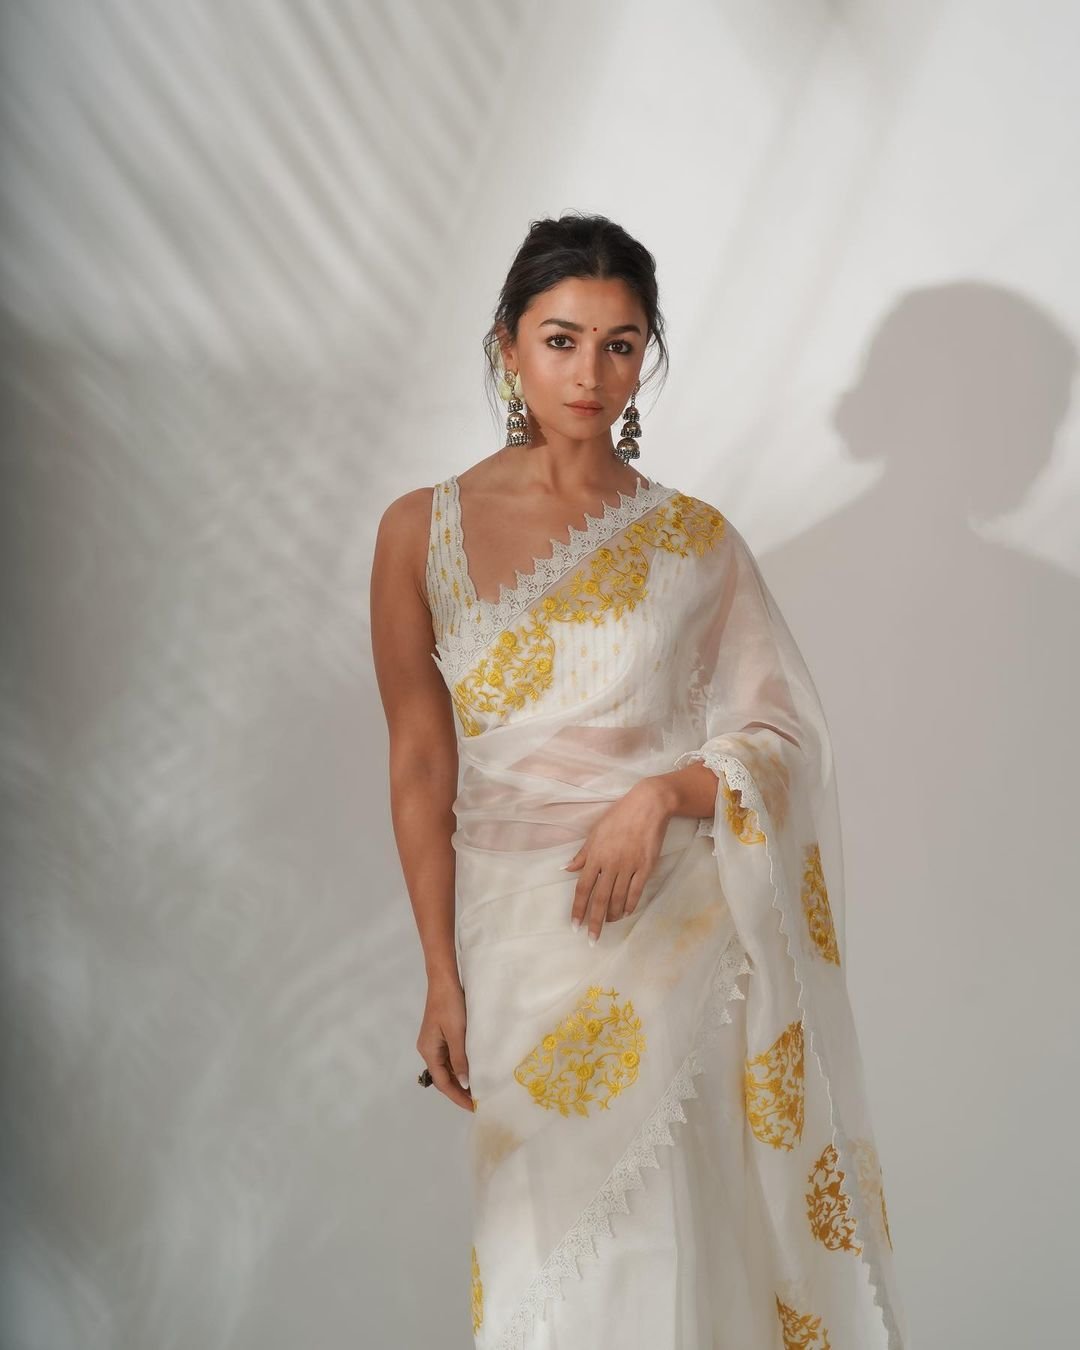 From Berlin To Kolkata, Alia Bhatt's Stunning White Sarees Follow